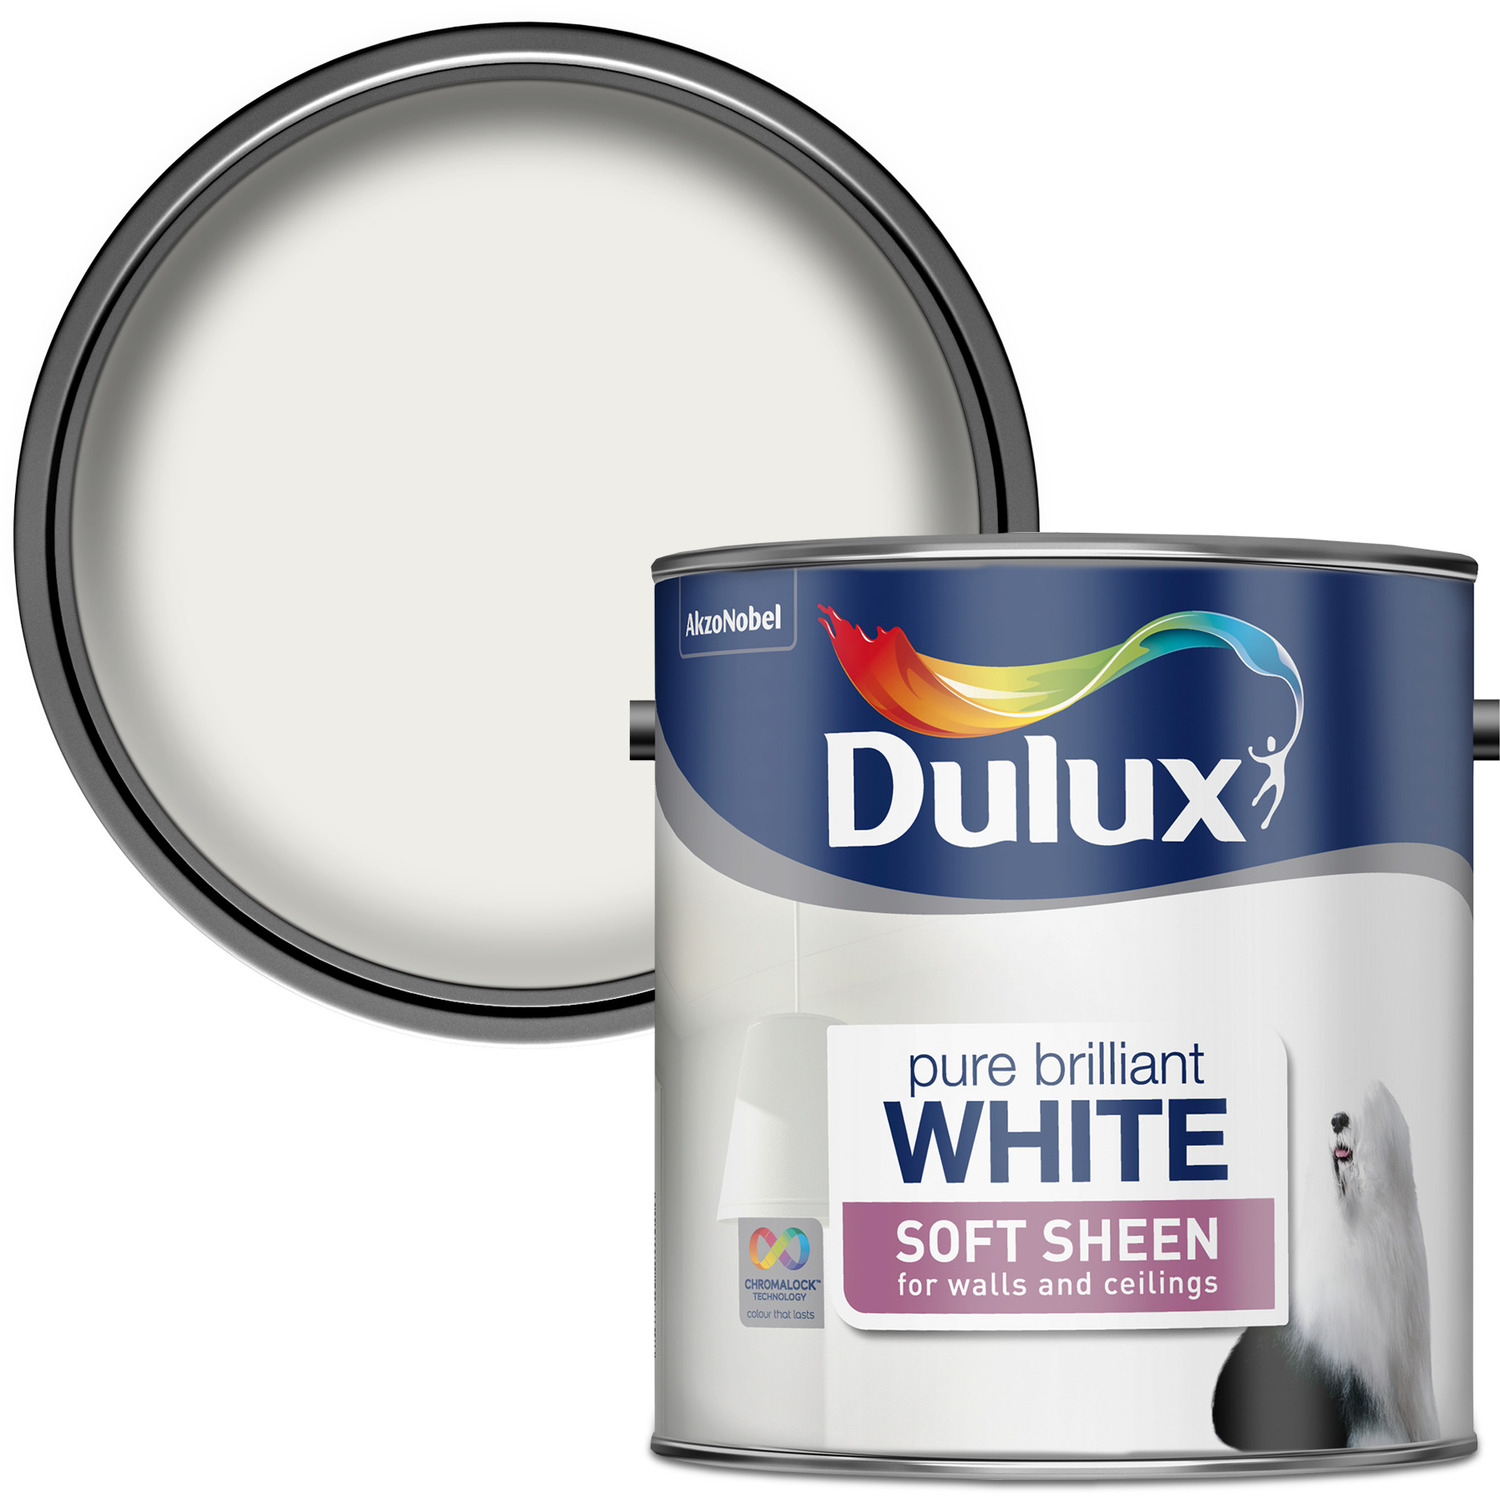 Dulux Walls & Ceilings Pure Brilliant White Soft Sheen Paint 2.5L Image 1